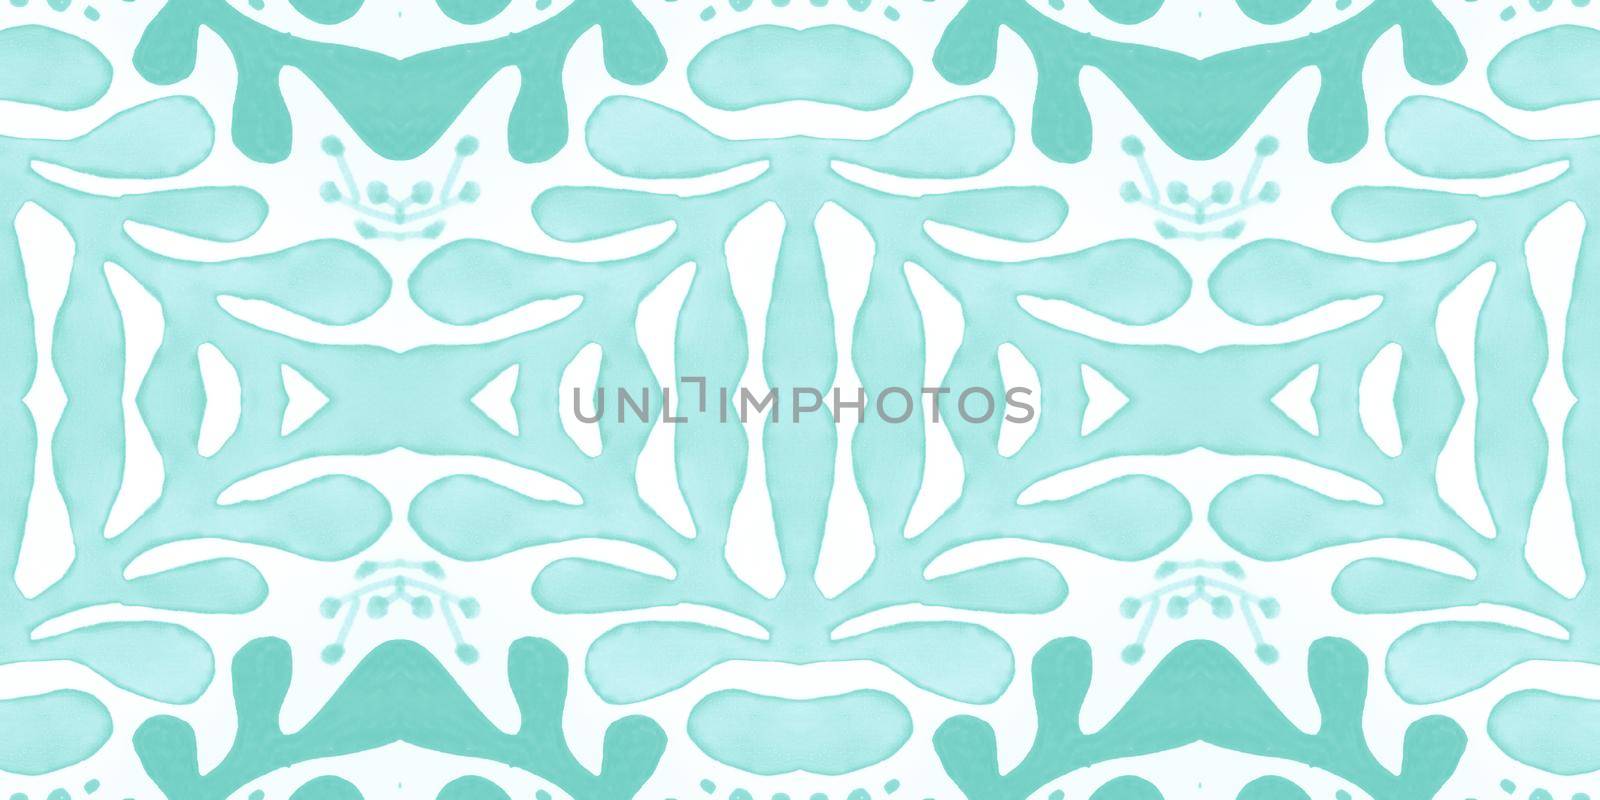 Talavera pattern. Seamless italian design. Retro majolica ornament. Talavera ceramic. Arabesque traditional print. Vintage azulejo or portuguese tile background. Floral Talavera ceramic.